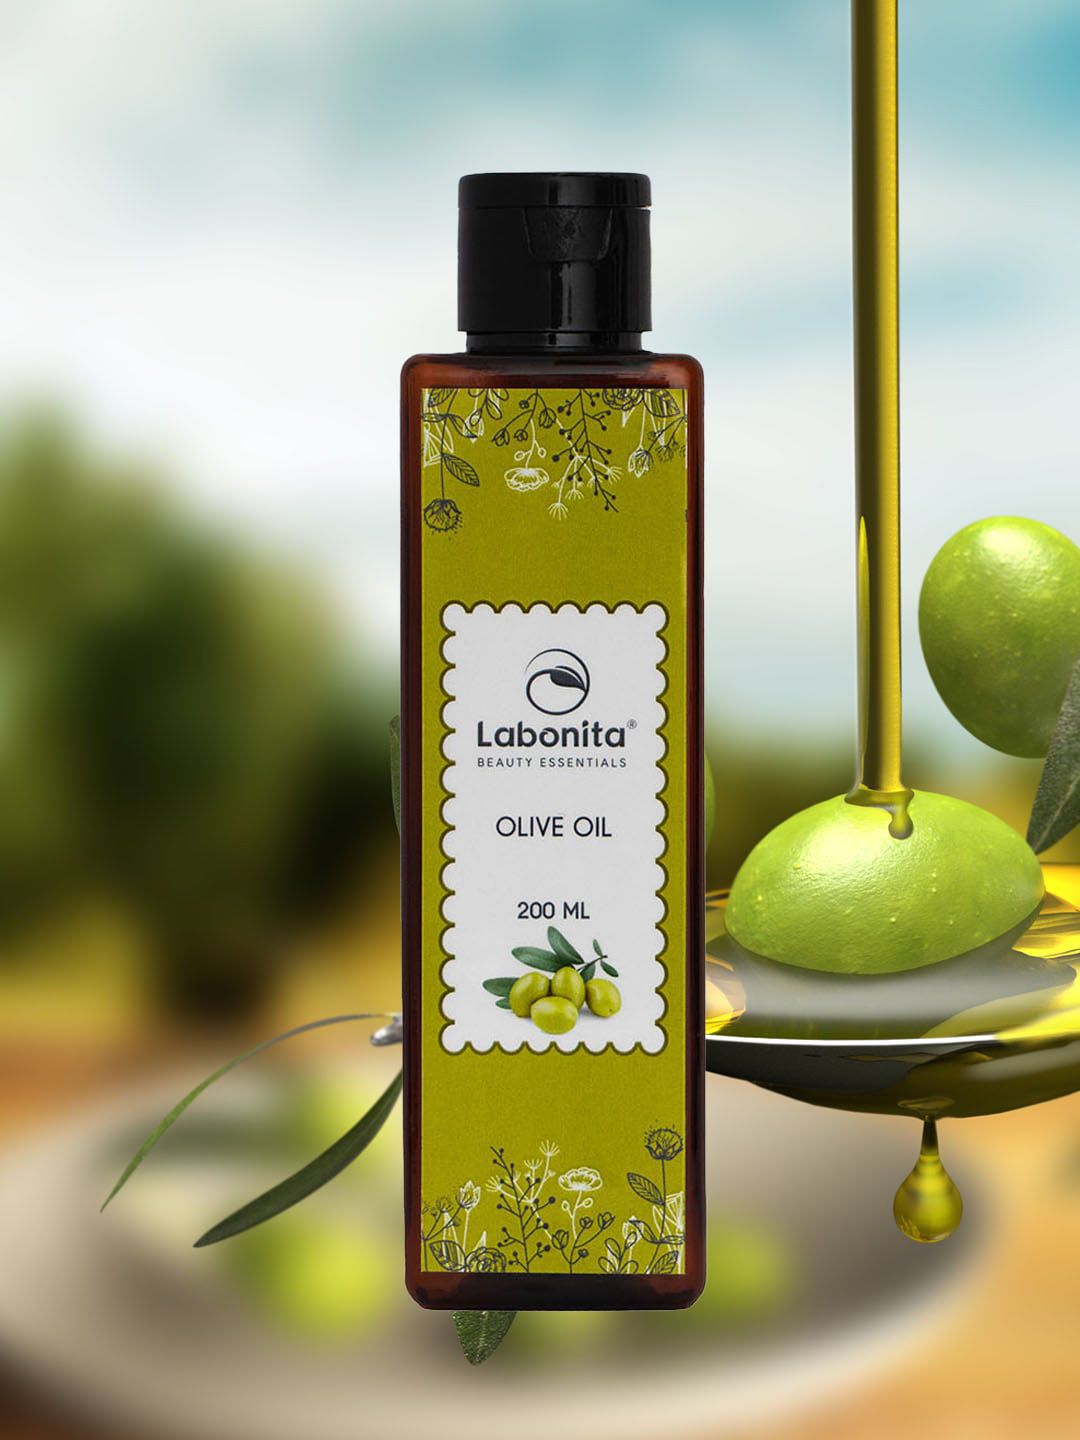 Labonita Chemical Free Olive Oil for Skin & Hair - 200 ml Price in India